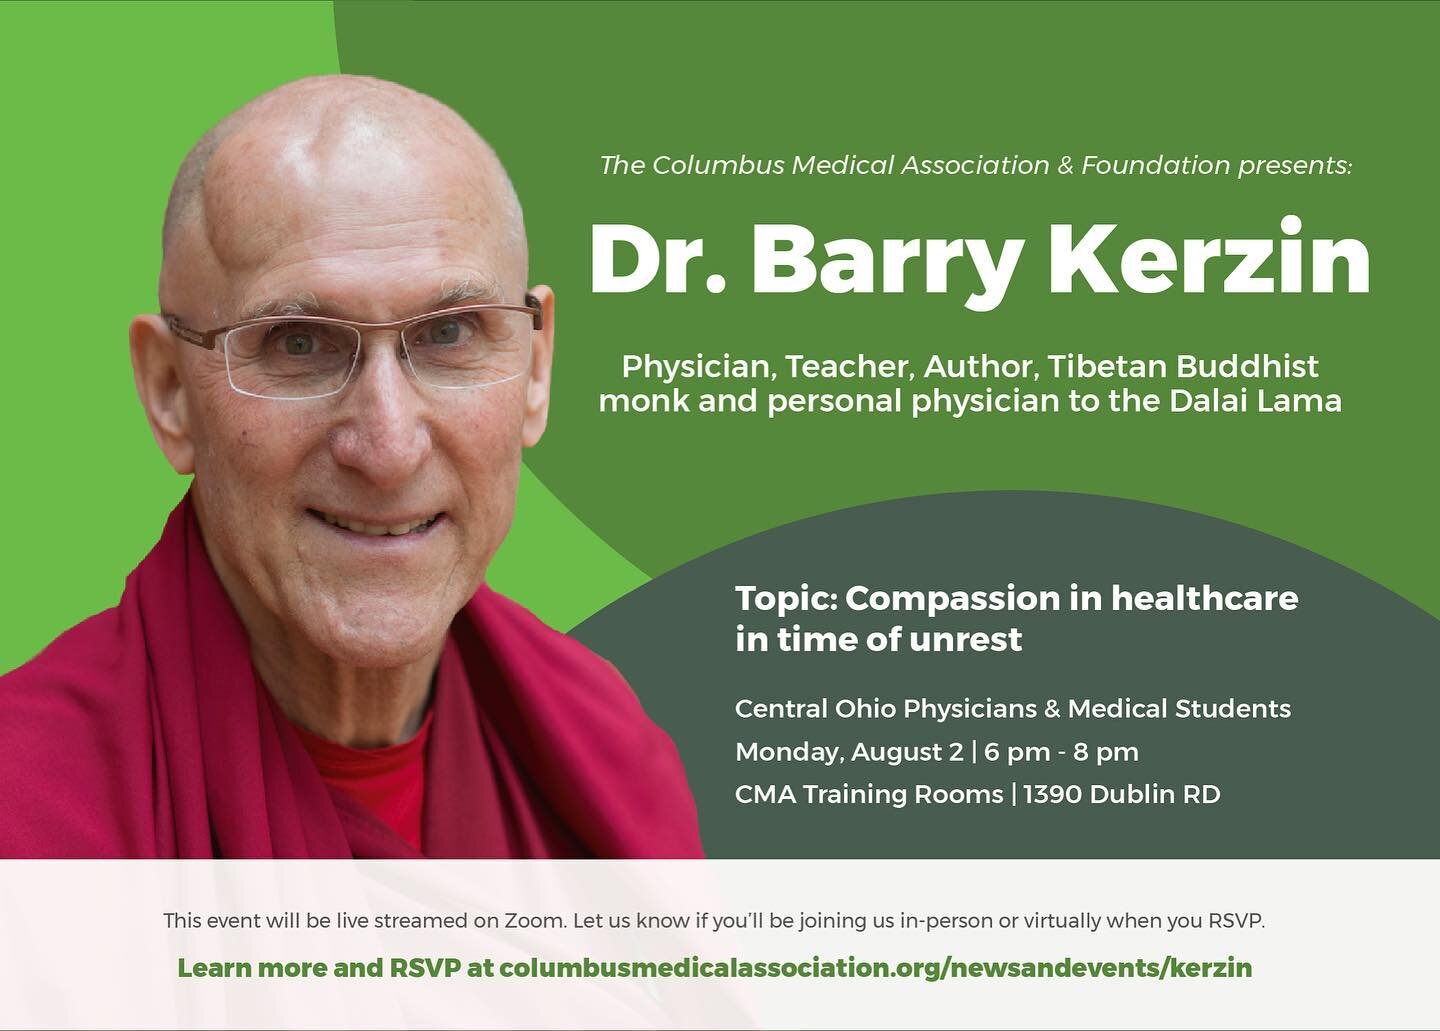 你和博士一起报名参加这个很棒的活动了吗. Barry Kerzin还没有? 如果不是，你还在等什么?! 

请在8月2日晚上加入我们，聆听Dr. Kerzin讨论了在这个动荡时期医疗保健中的同情心. 向俄亥俄州中部的所有医生开放